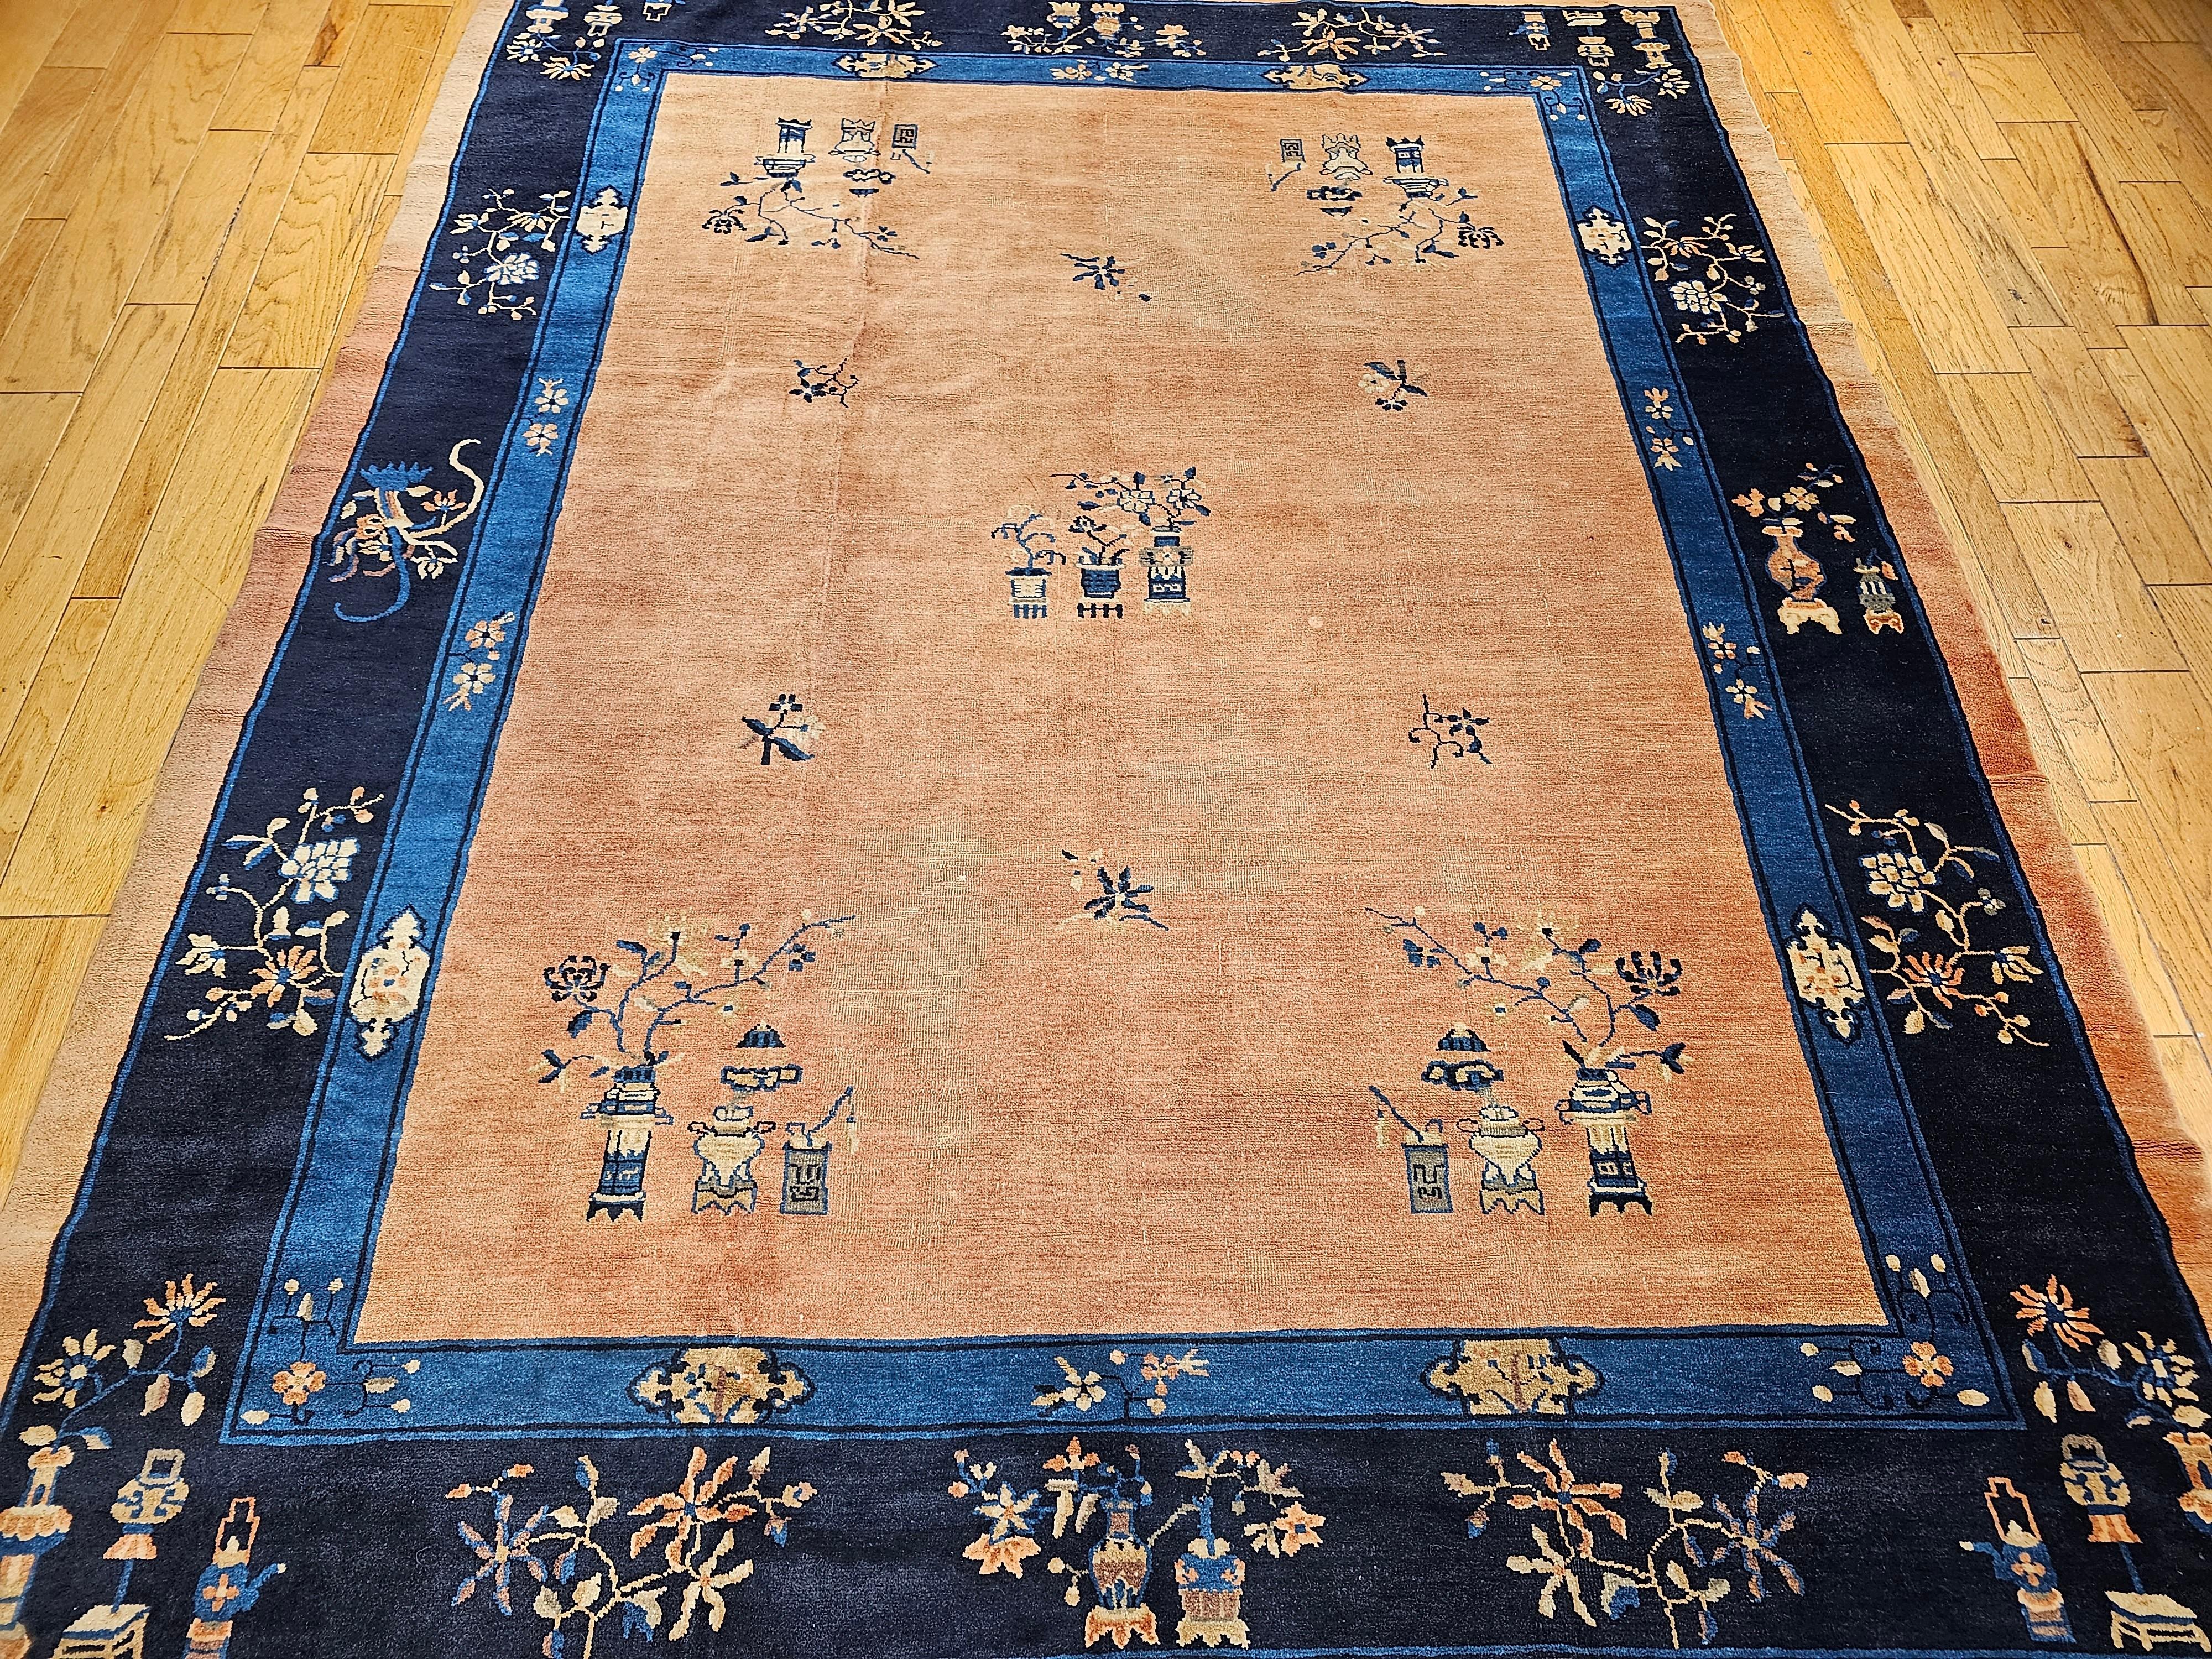 Vintage  Tapis chinois de Pékin noué à la main de la fin des années 1800.  Le tapis a un champ de couleur pêche pâle avec des bordures bleu marine et bleu pâle.  Le tapis présente un magnifique et subtil motif floral chinois classique.  Les tapis